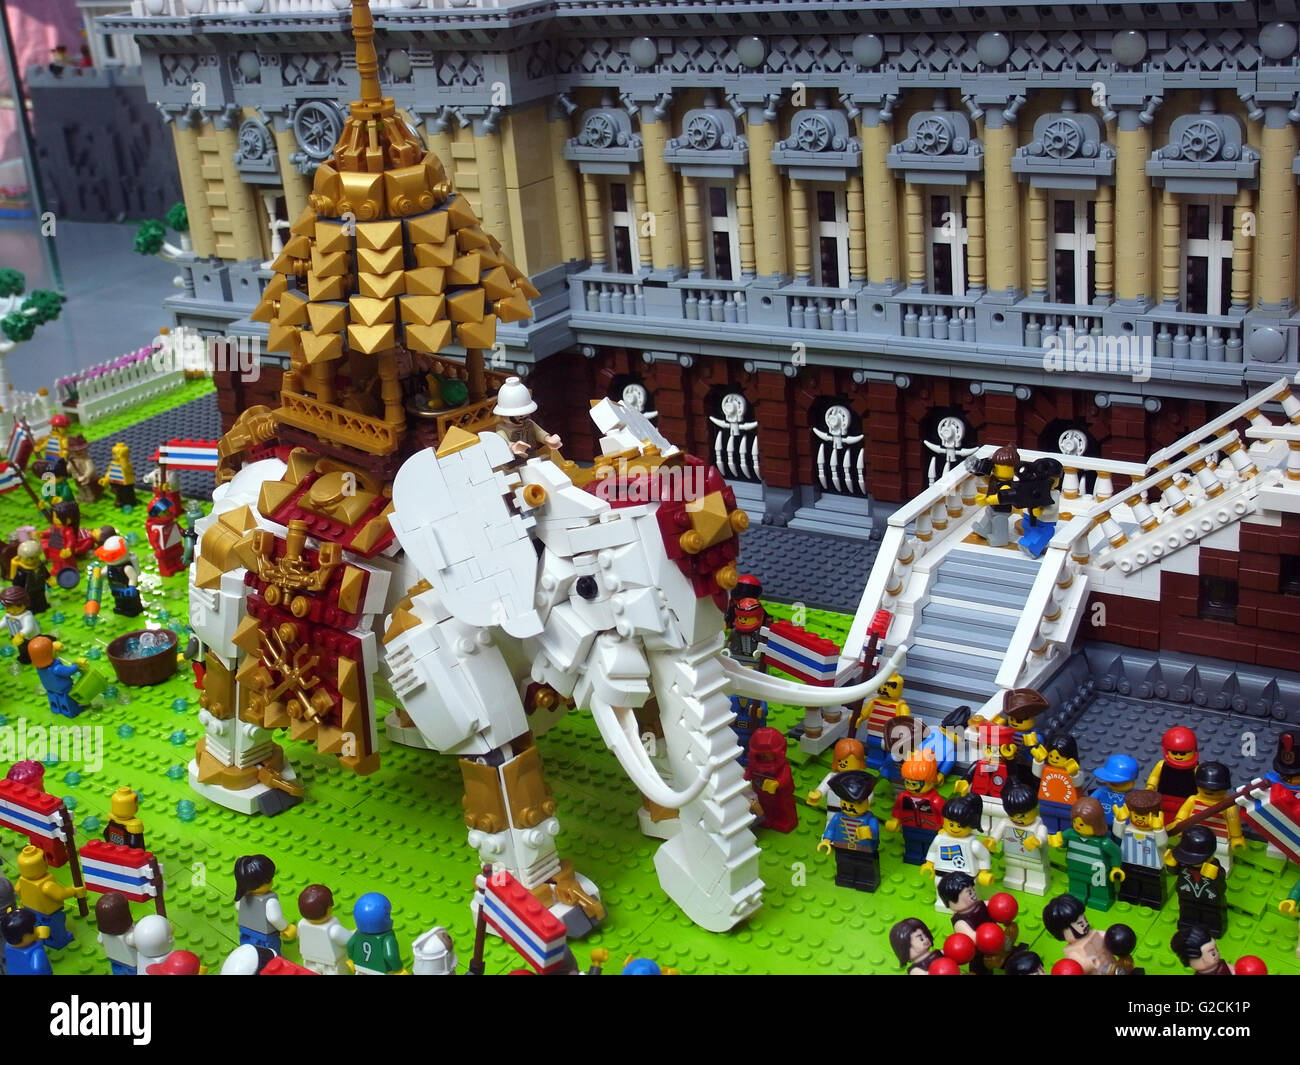 LEGO Modell Thailand Landschaft Bauspaß Tempel traditionellen alten  Heiligen Hauses Kaiserpalast Spielzeug tagsüber Elefant weiße Menschen c  Stockfotografie - Alamy